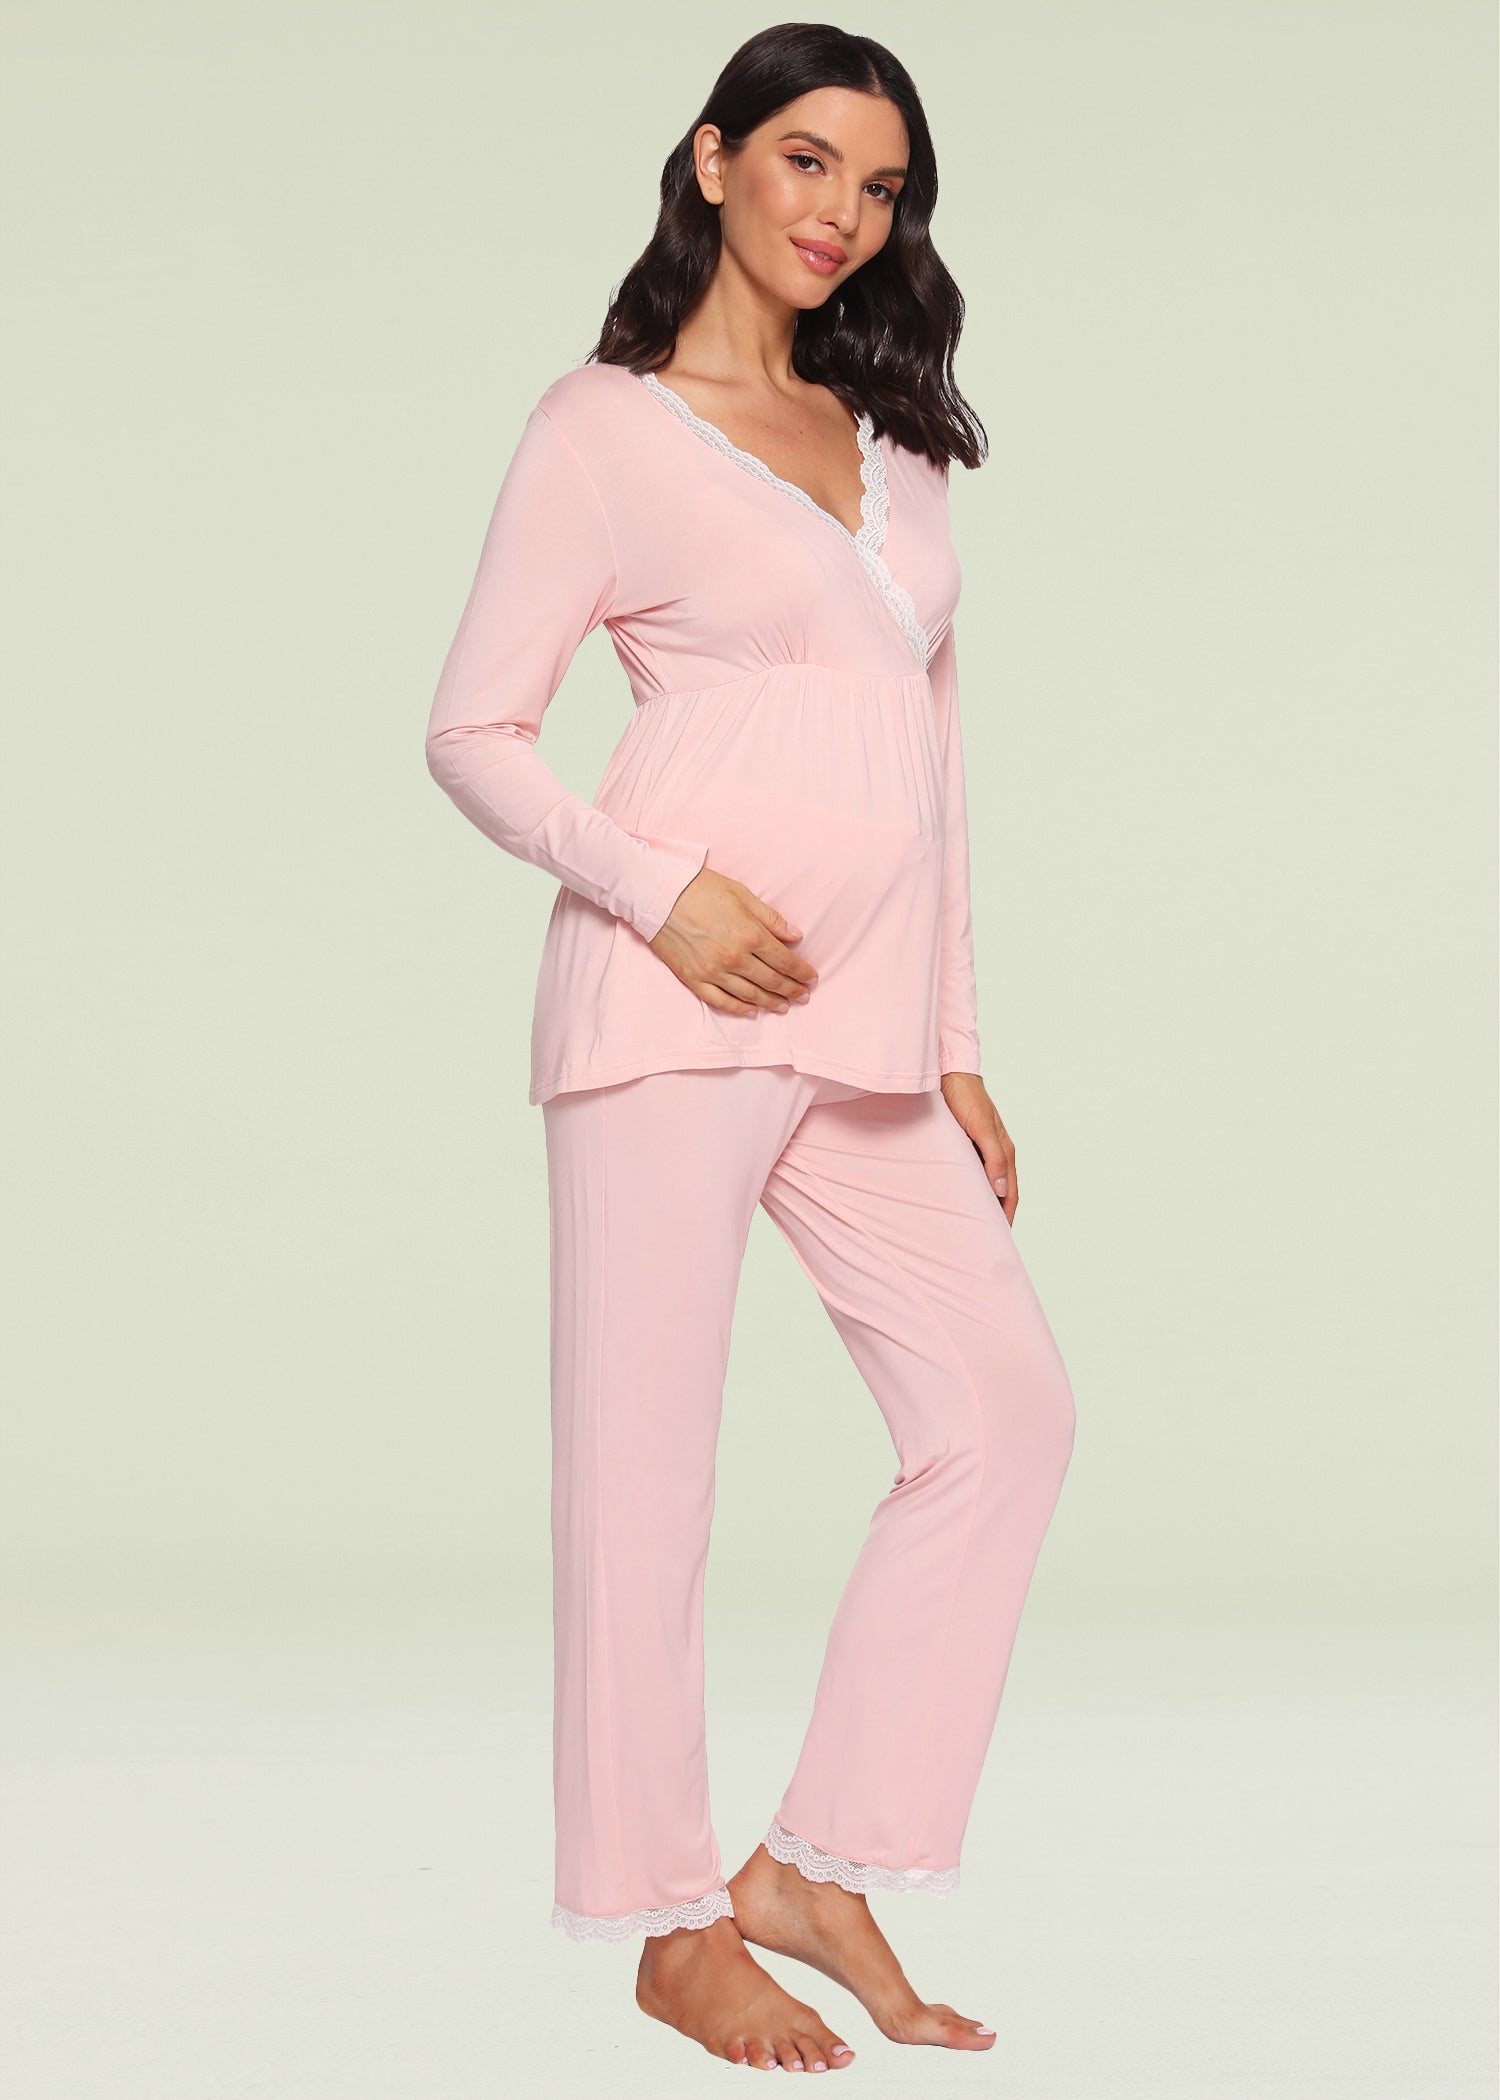 Latuza Women’s Maternity Pajama Set